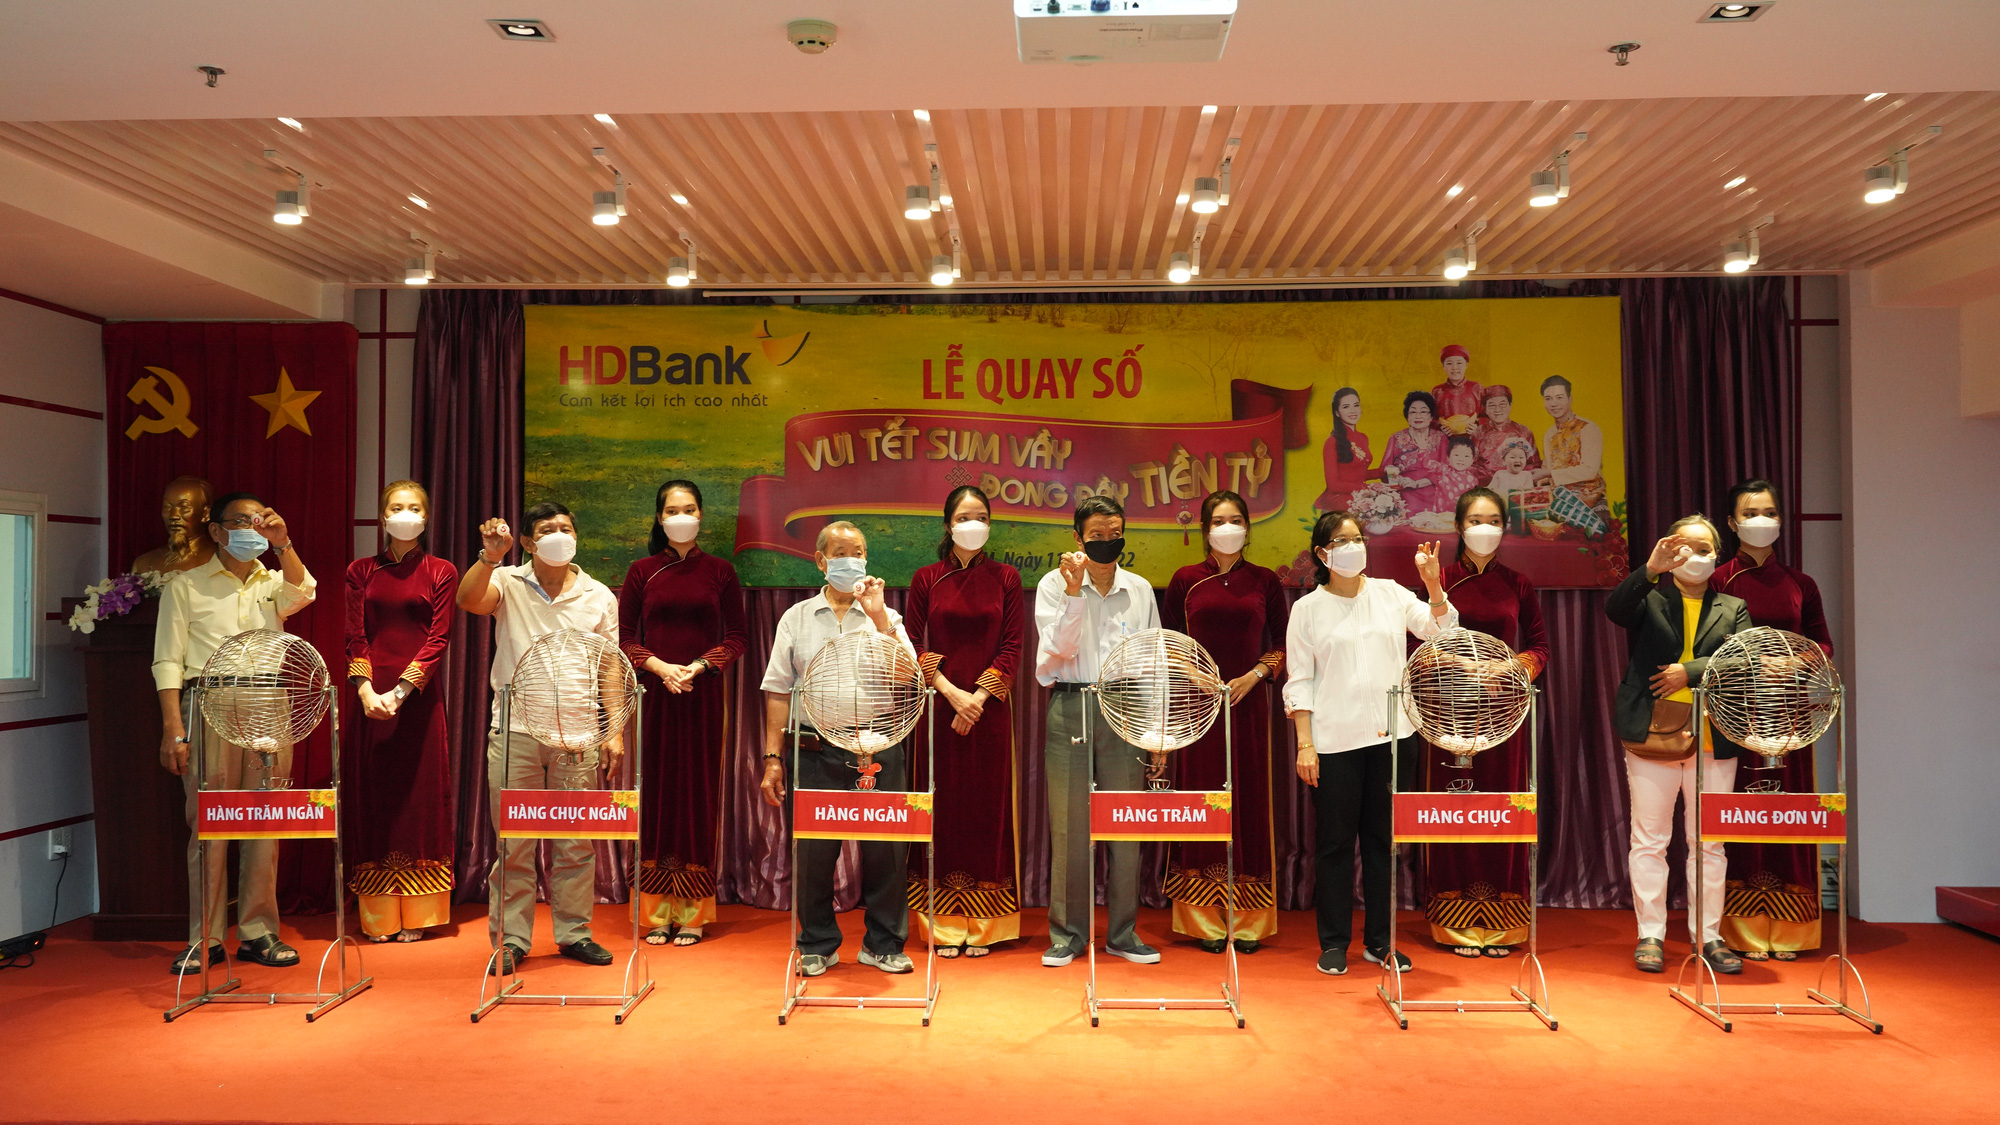 HDBank chúc mừng khách hàng trúng 1 tỷ đồng trong chương trình “Vui Tết sum vầy - Đong đầy tiền tỷ” - Ảnh 1.